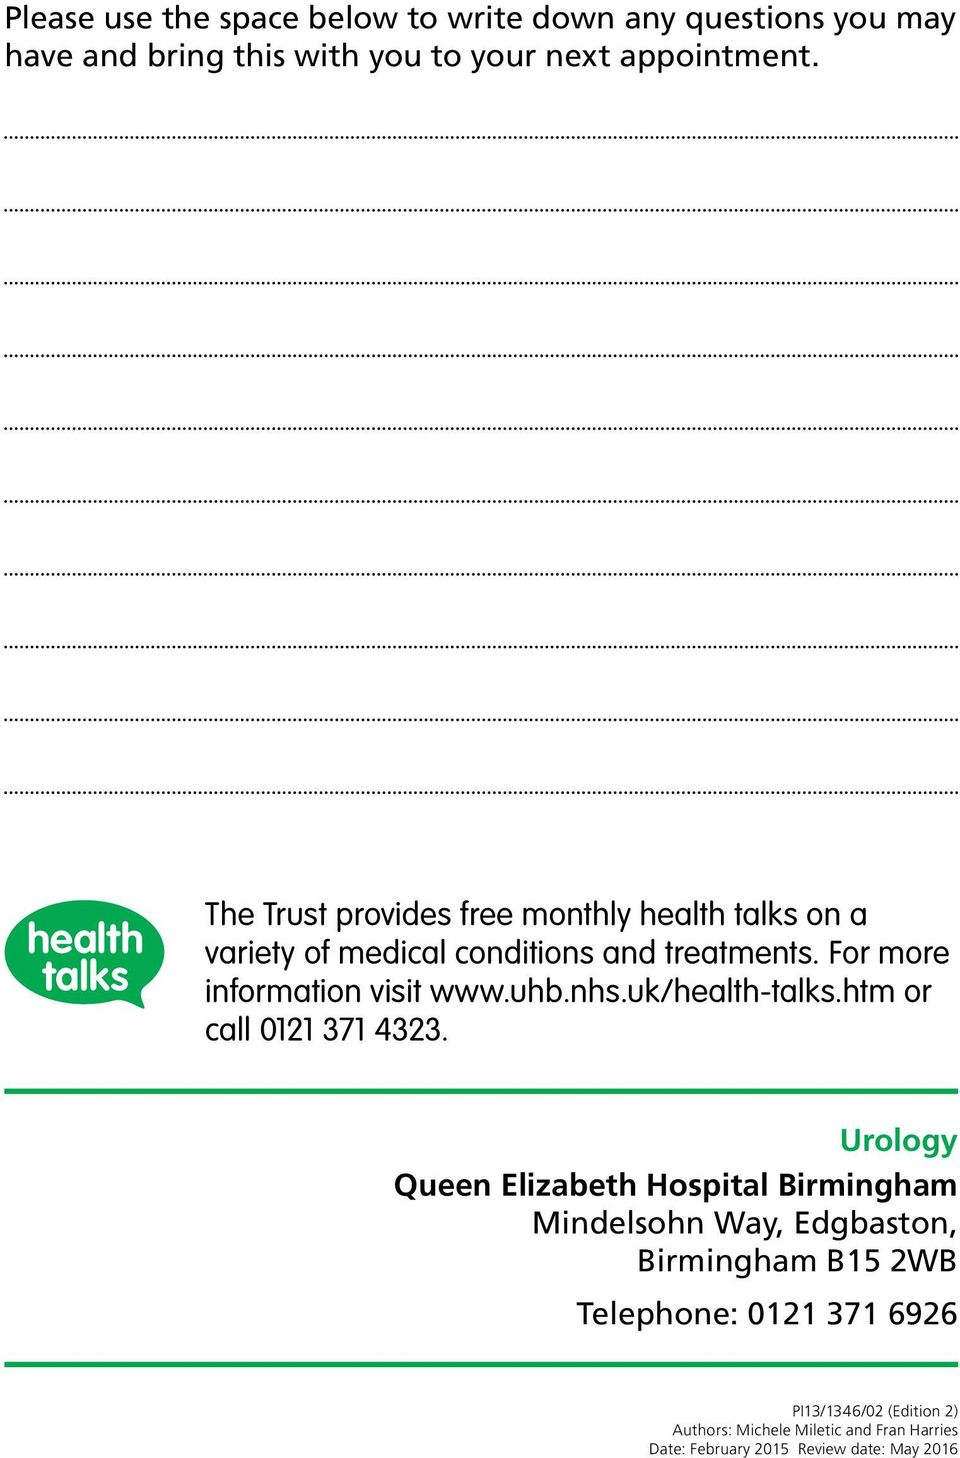 uhb.nhs.uk/health-talks.htm or call 0121 371 4323.